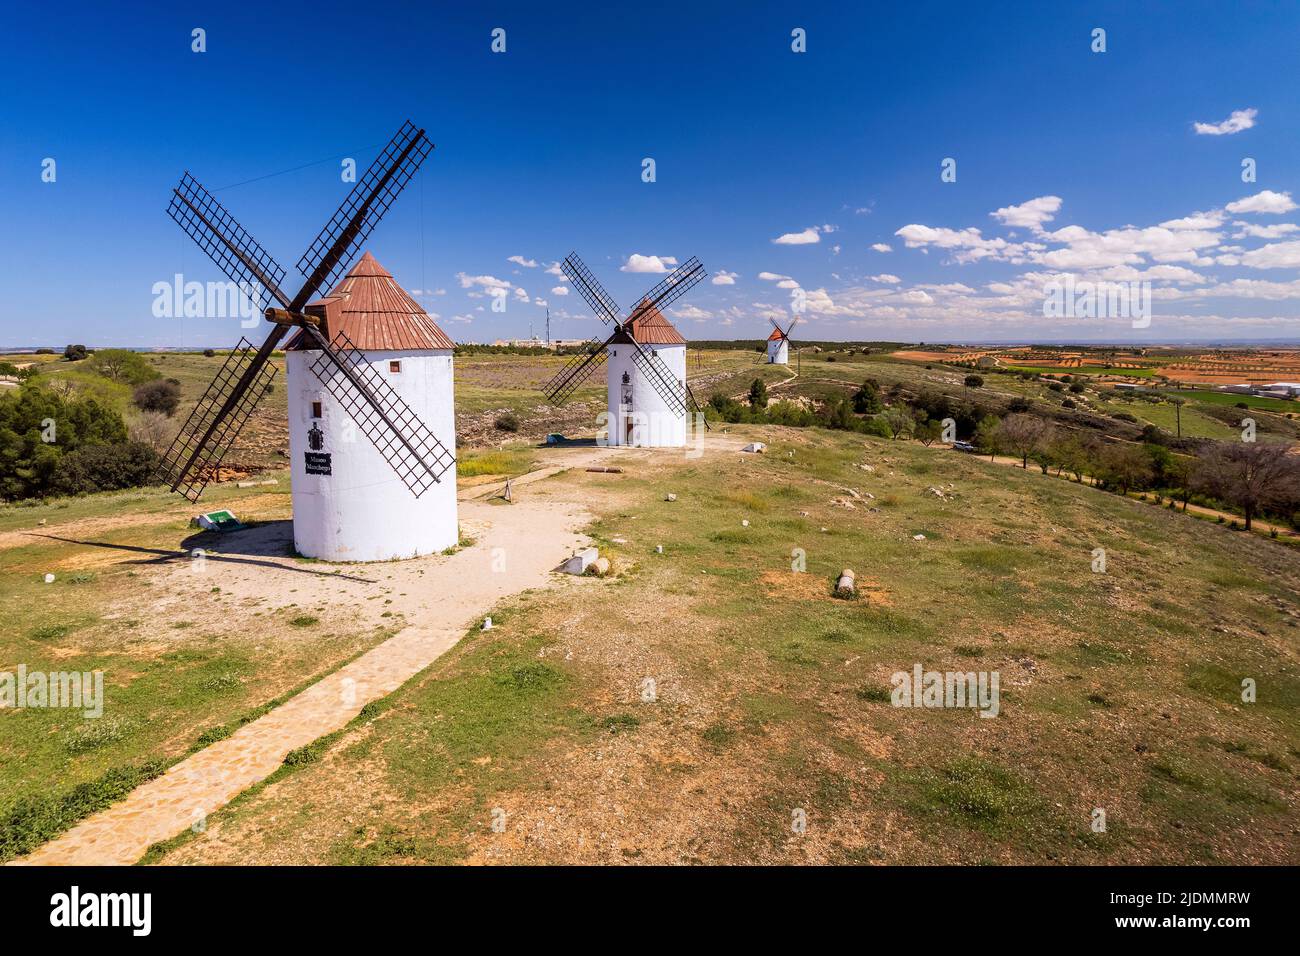 Typical windmills, Mota del Cuervo, Castilla-La Mancha, Spain Stock Photo